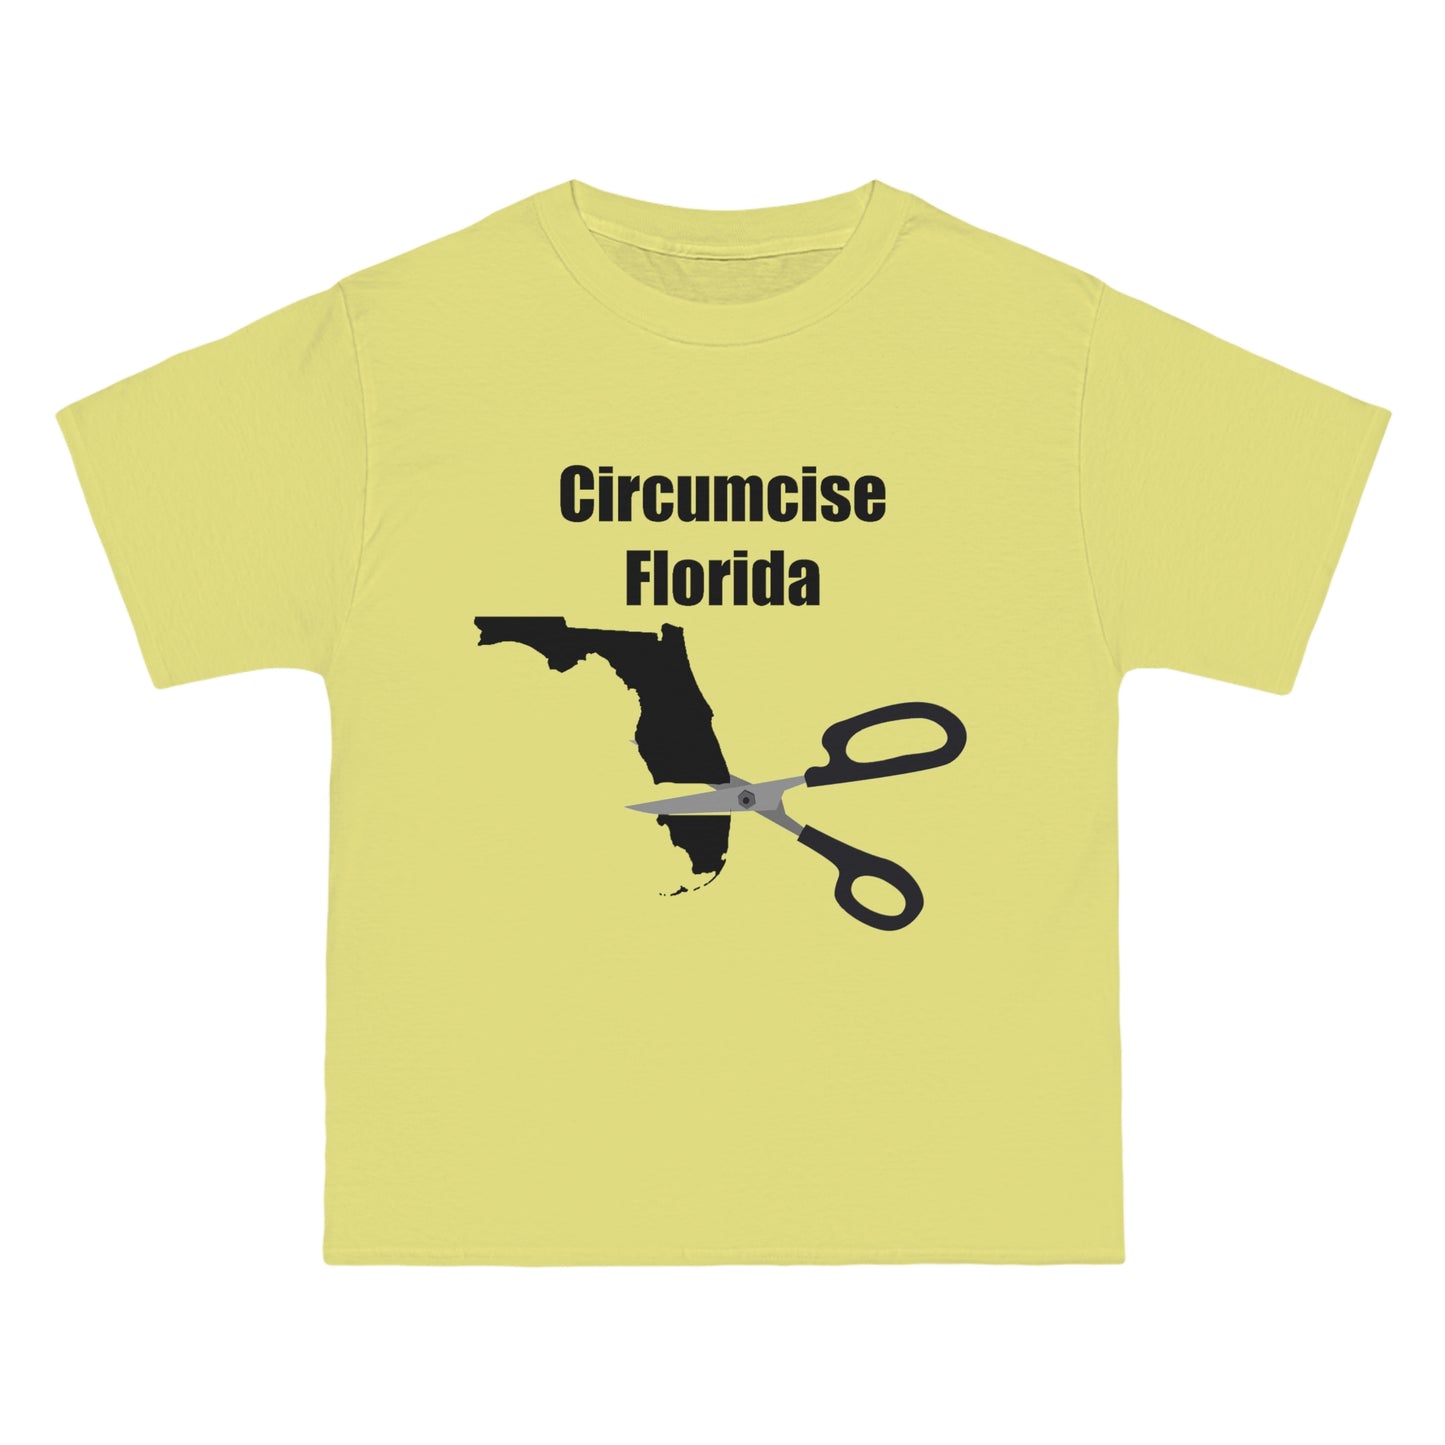 Circumcise Florida